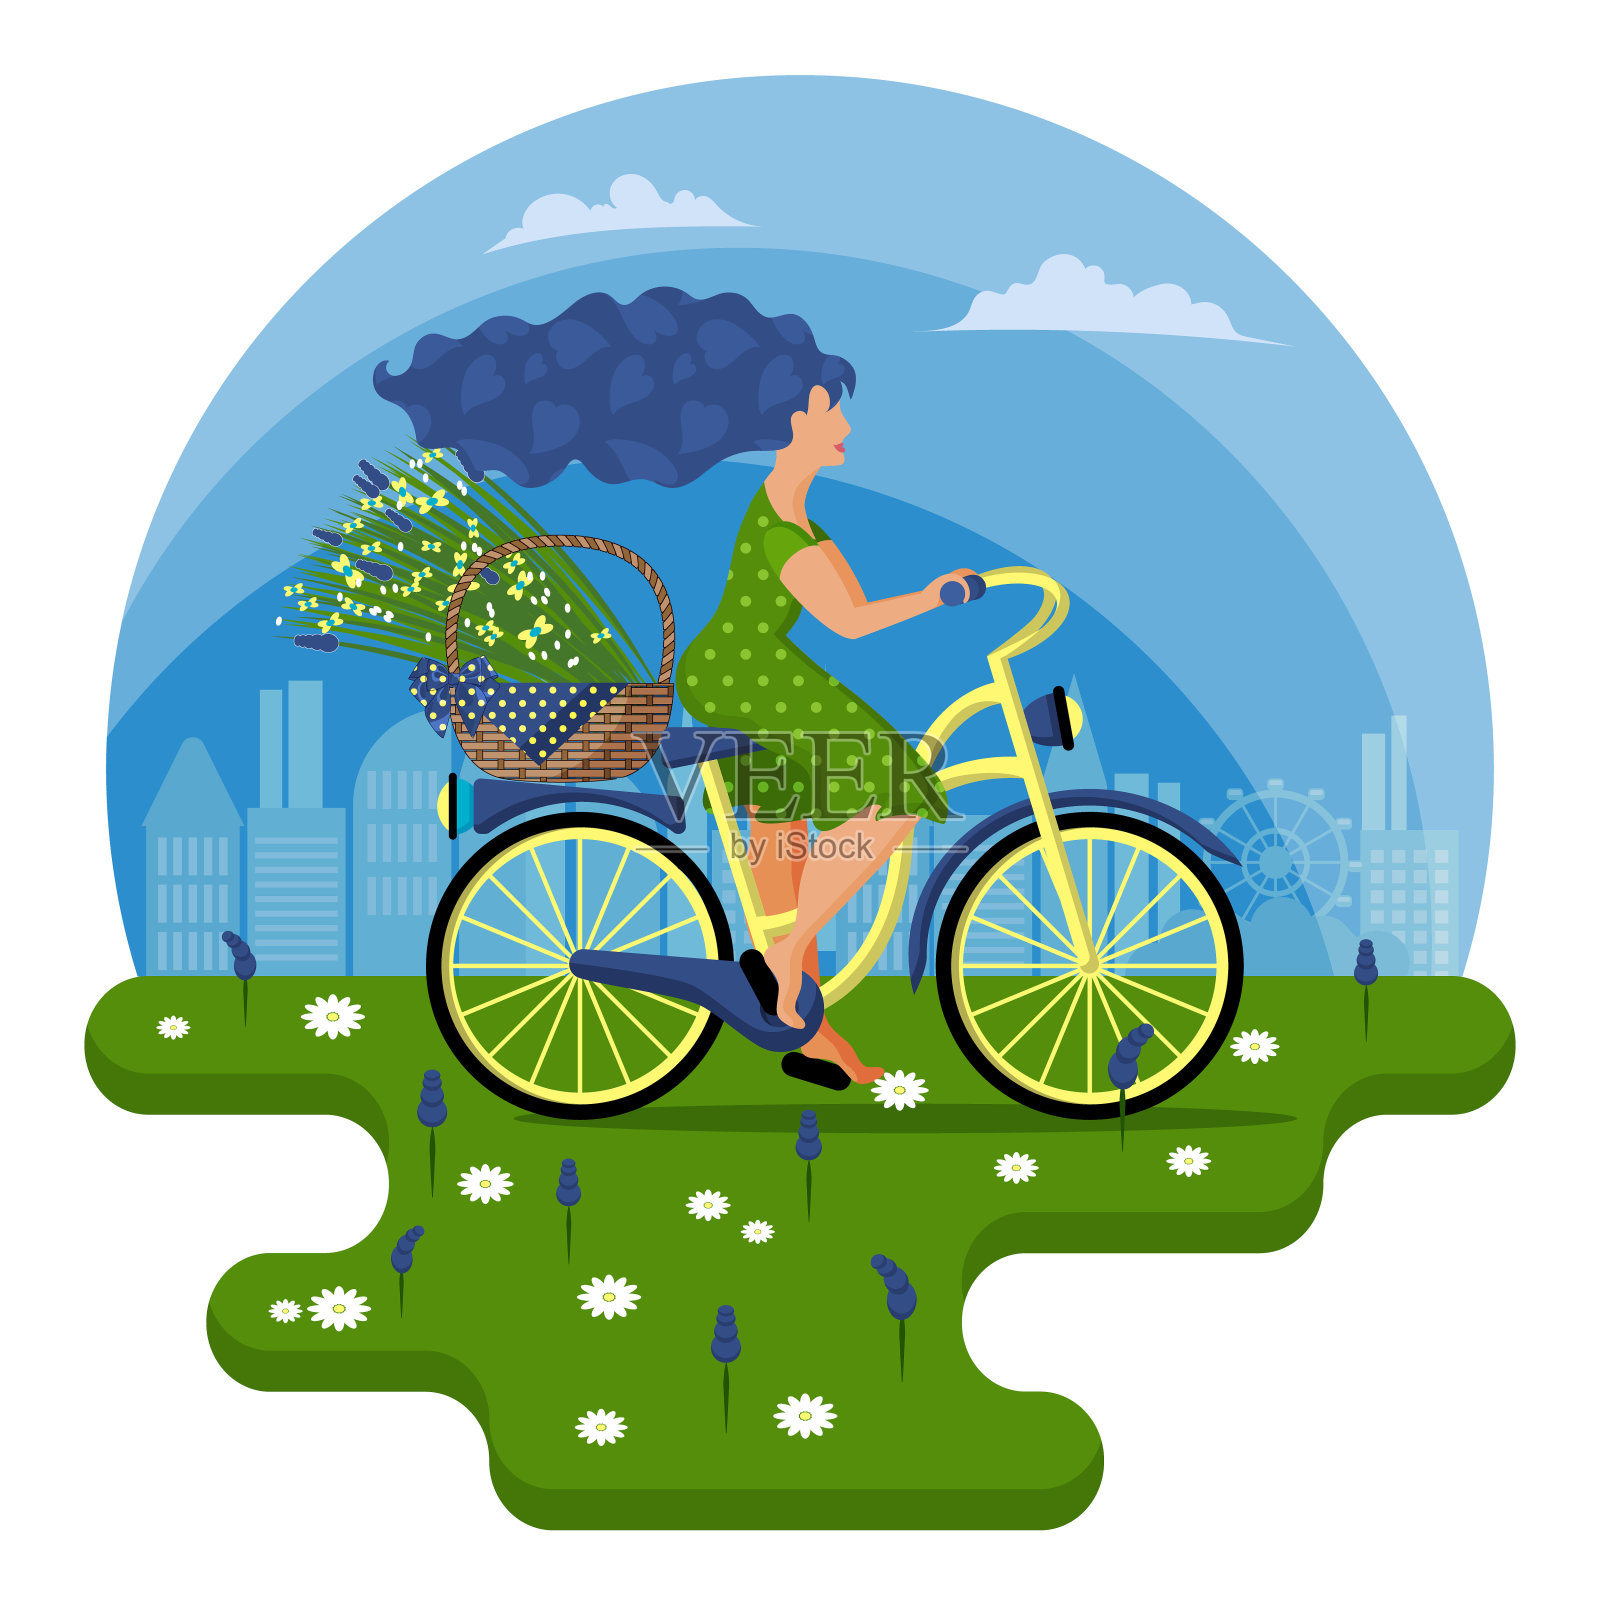 一位身穿绿色连衣裙的年轻女子骑着自行车，挎着一篮子野花穿过田野。插画图片素材